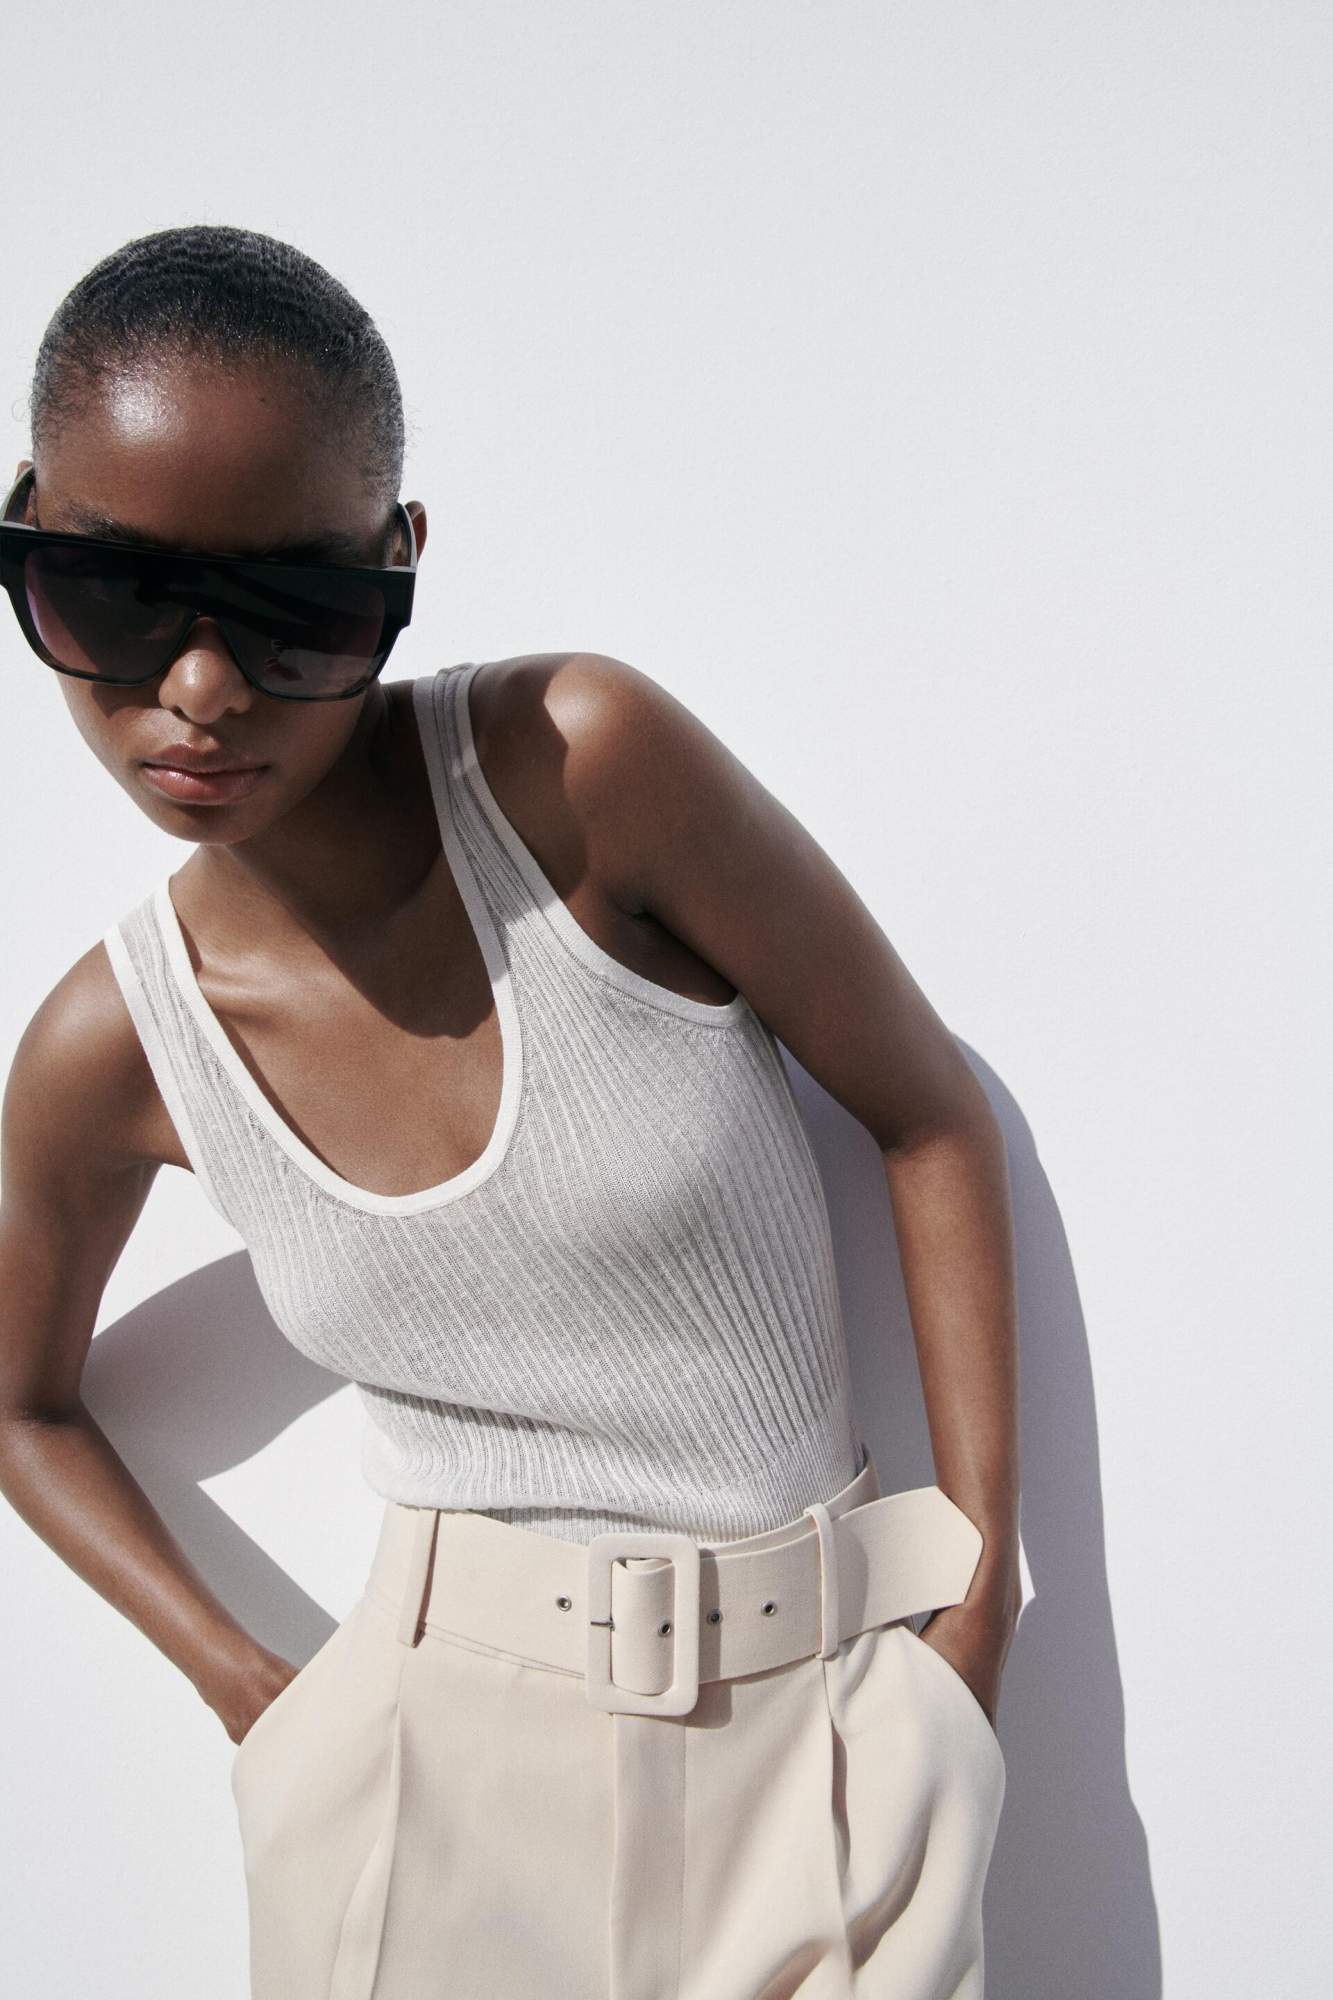 Брюки женские Zara широкопотные белые - огромный выбор по лучшим ценам